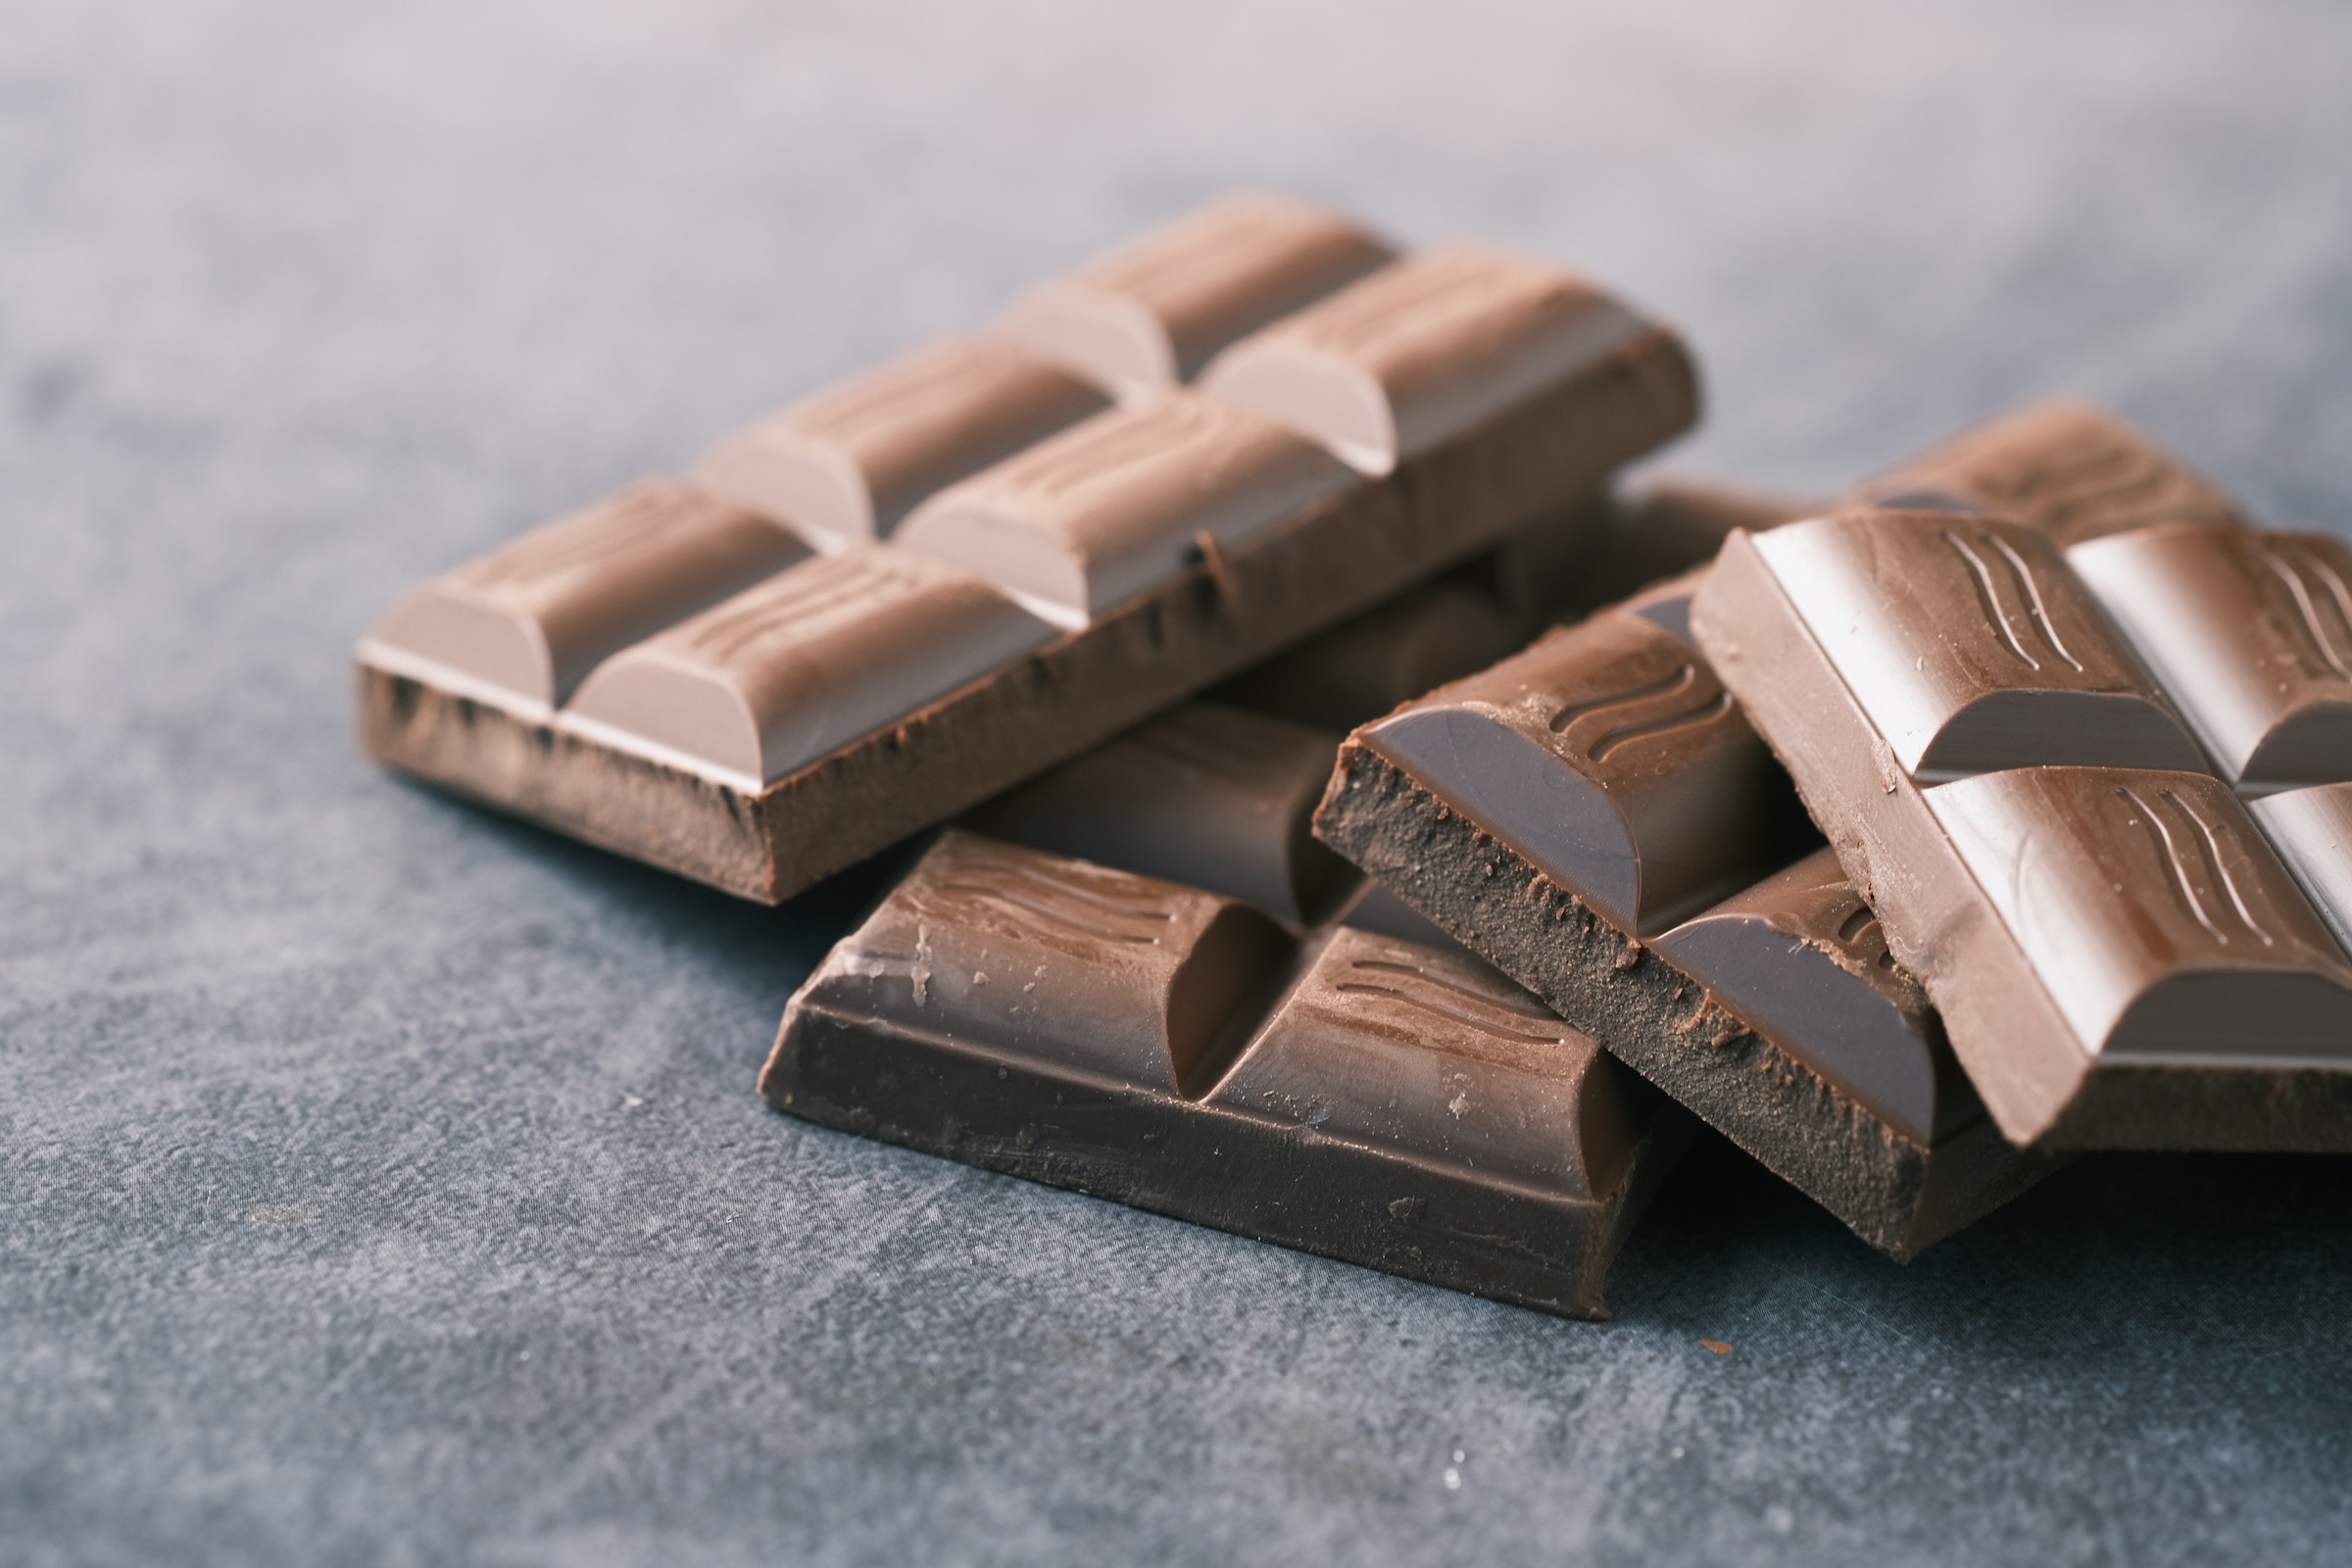 Svájci kutatók feltalálták az egészségesebb, fenntartható csokit – 3 gasztrokönyvvel